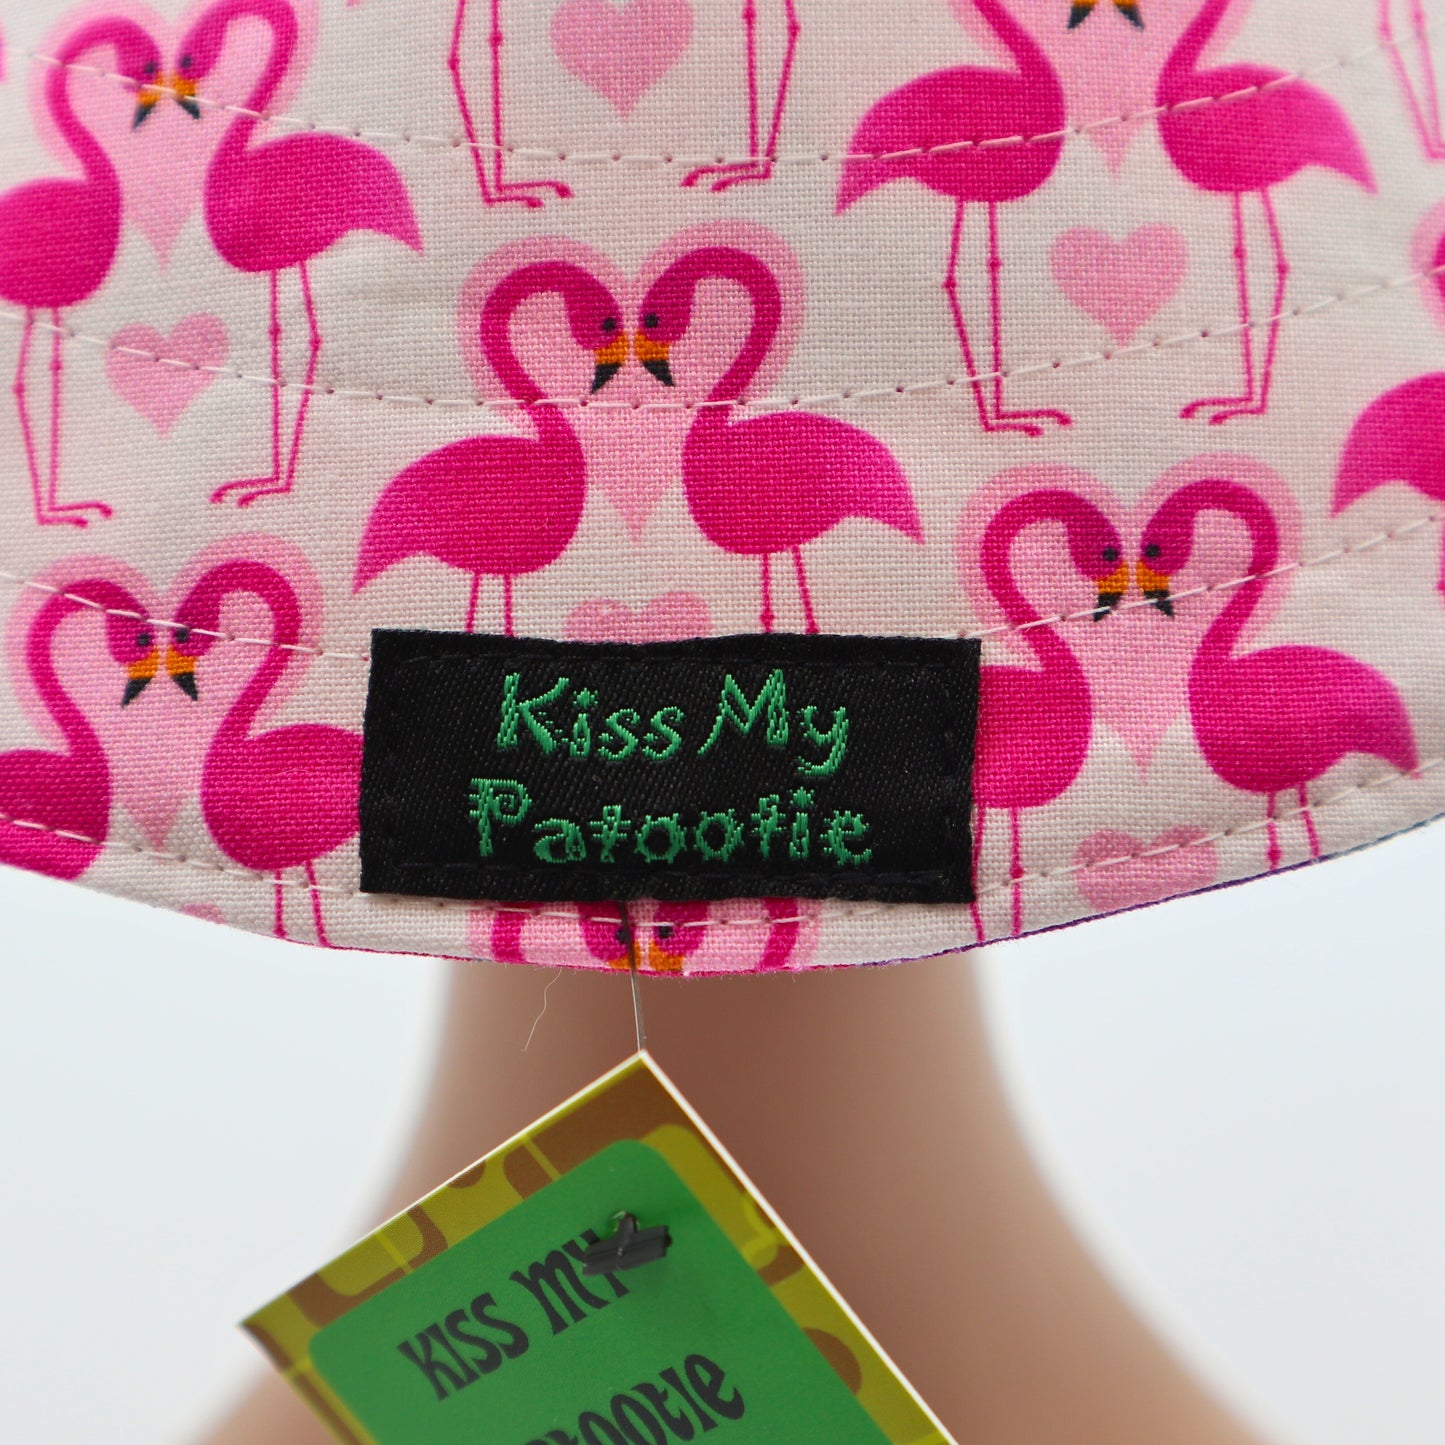 Reversible Sun Hat - Ladies & Girls sizes - flamingo / pink floral